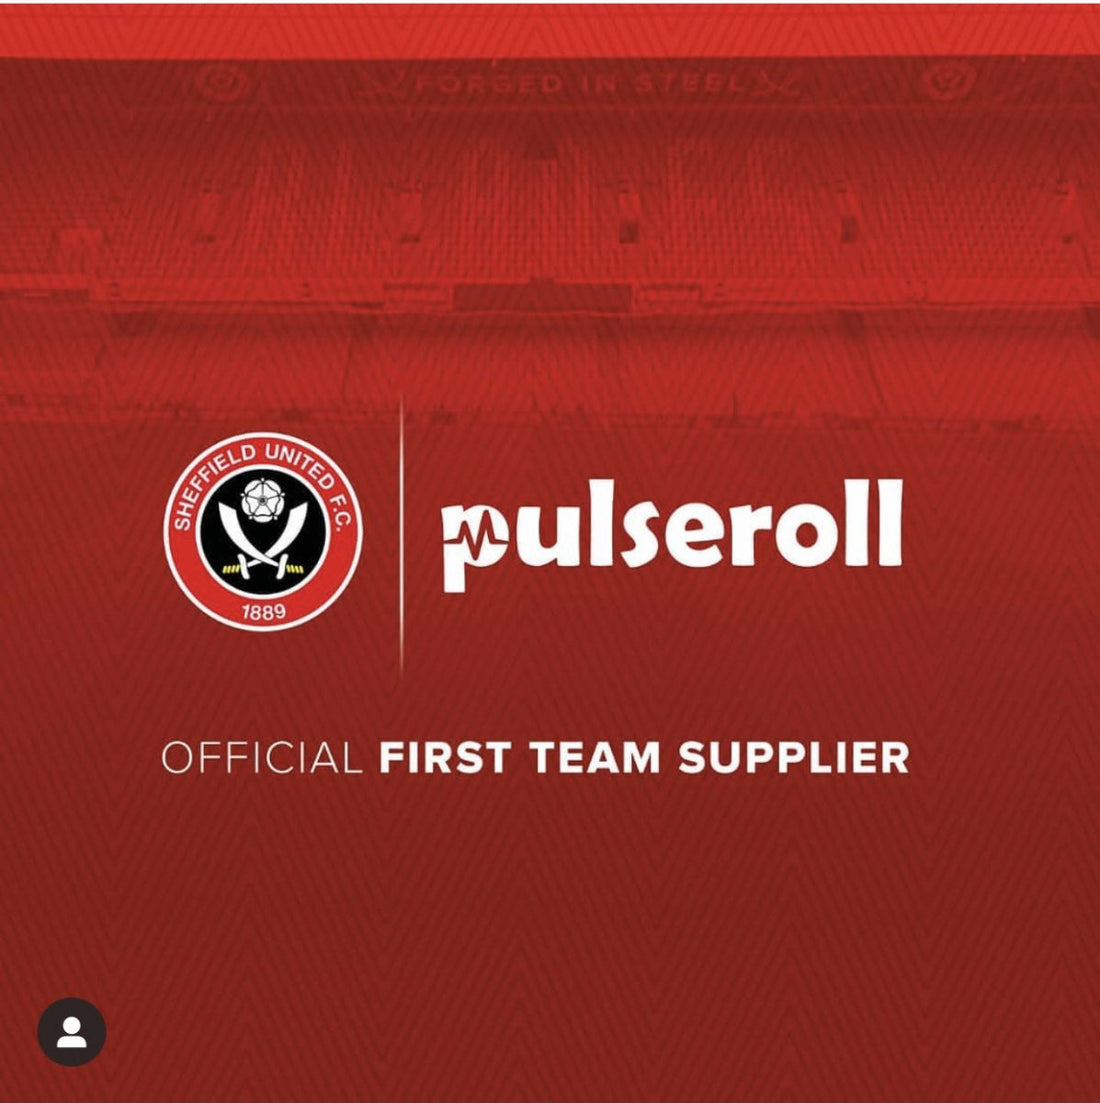 Pulseroll becomes Official Supplier Partner of Sheffield United - Pulseroll